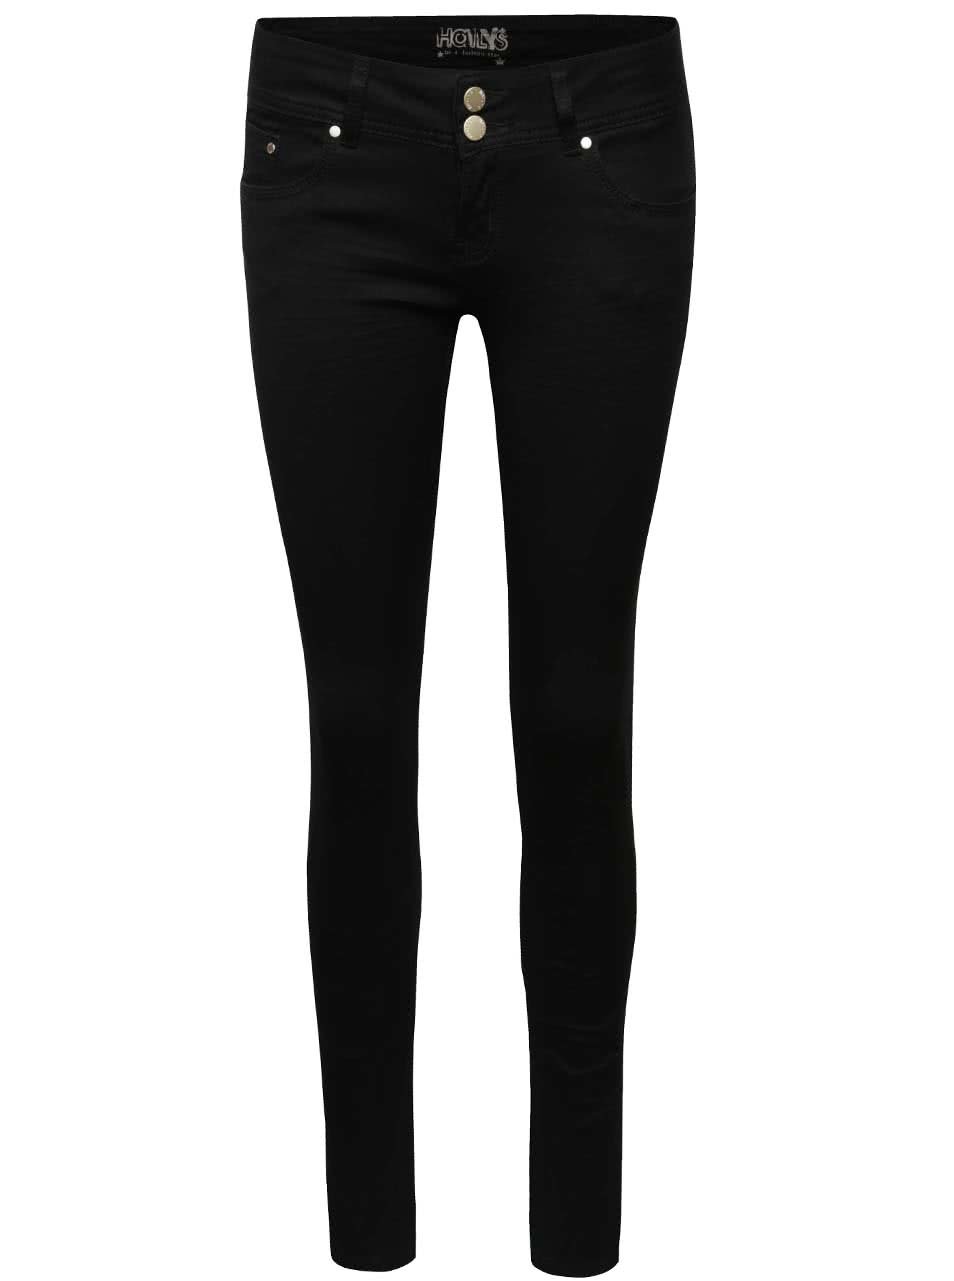 Černé džíny s nízkým pasem Haily´s Kitty